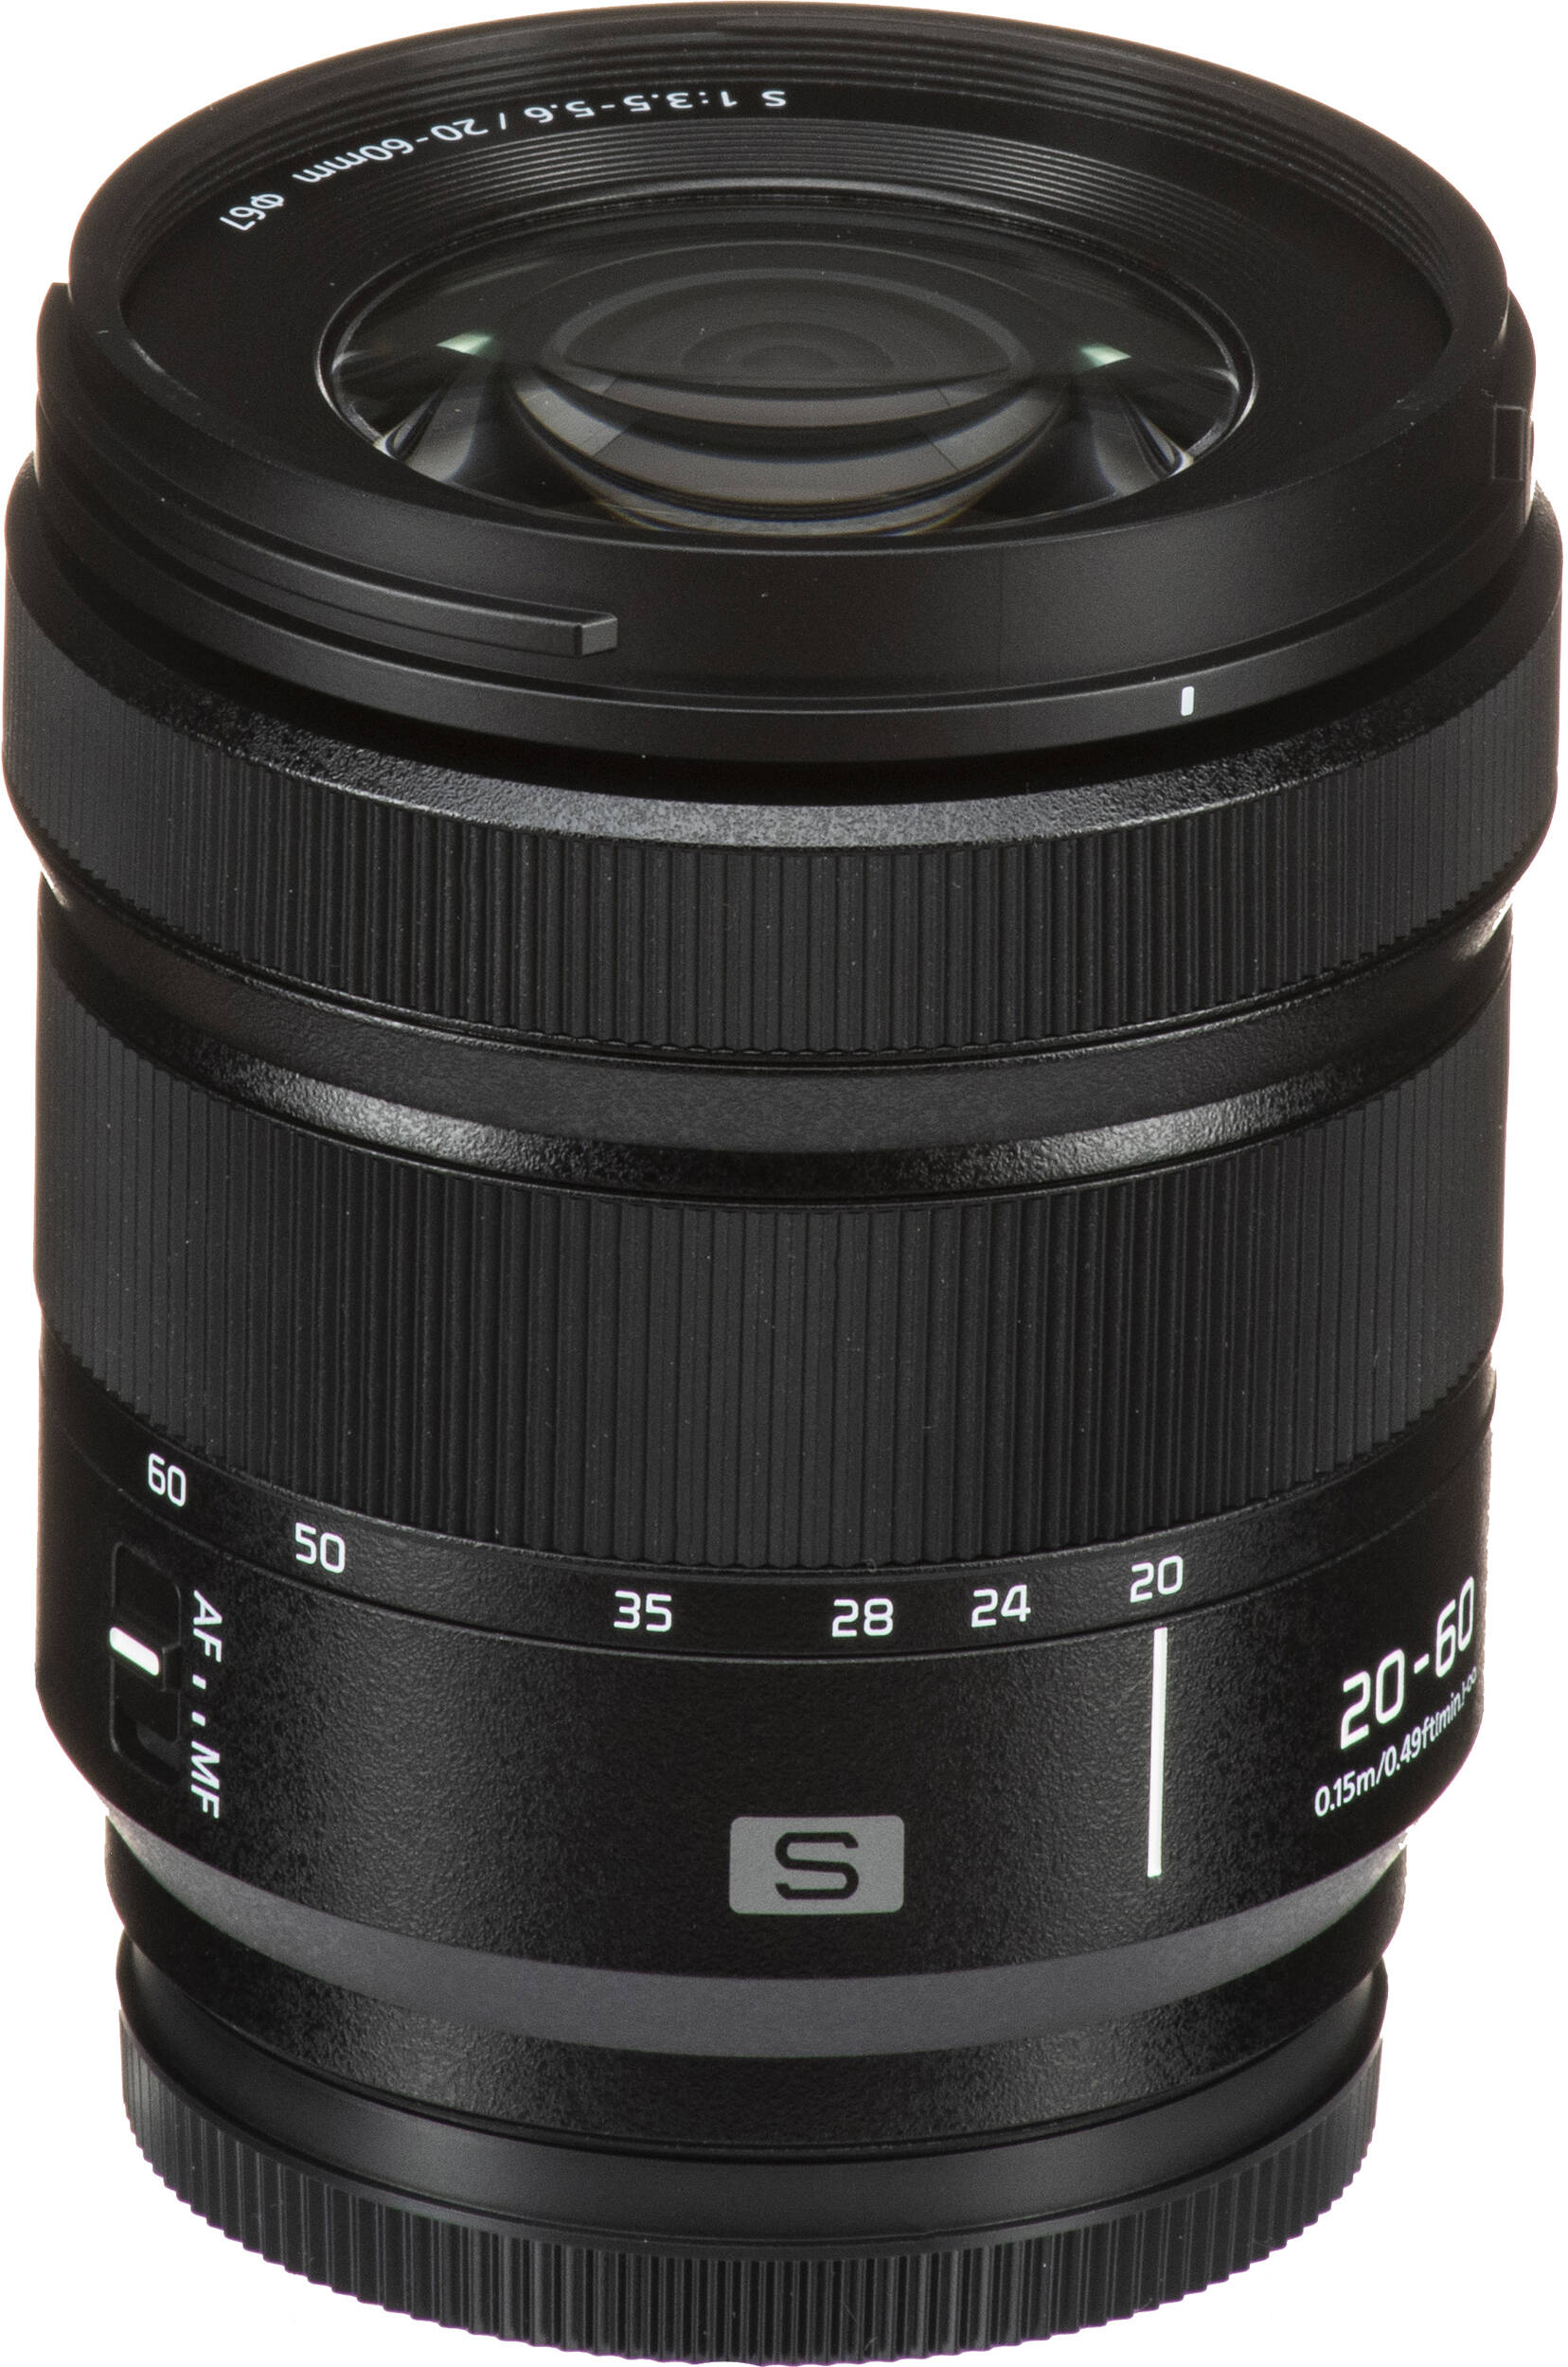 Фотоапарат Panasonic Lumix DC-S9 + 20-60mm f/3.5-5.6 Jet Black (DC-S9KE-K)фото25